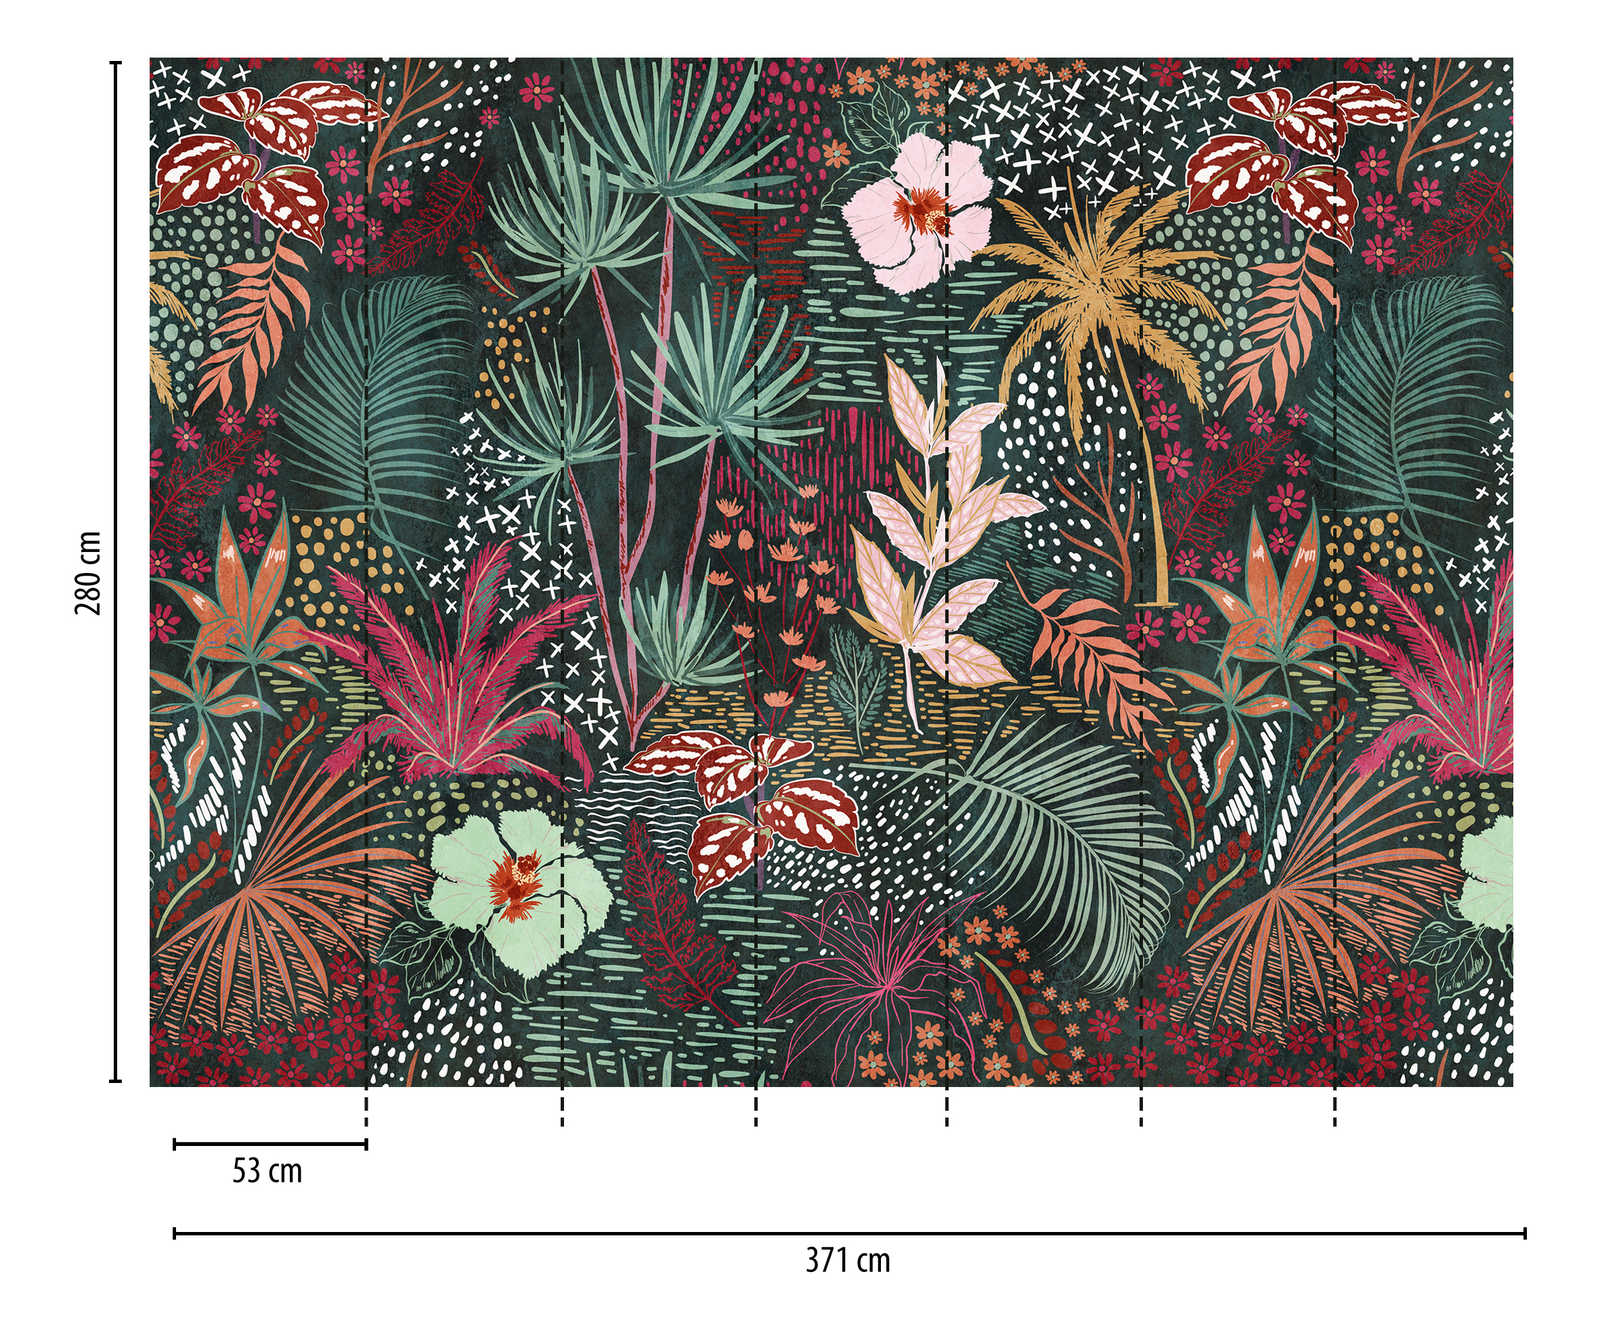             behang nieuwigheid | motief behang smaragdgroen met bloemen patroon
        